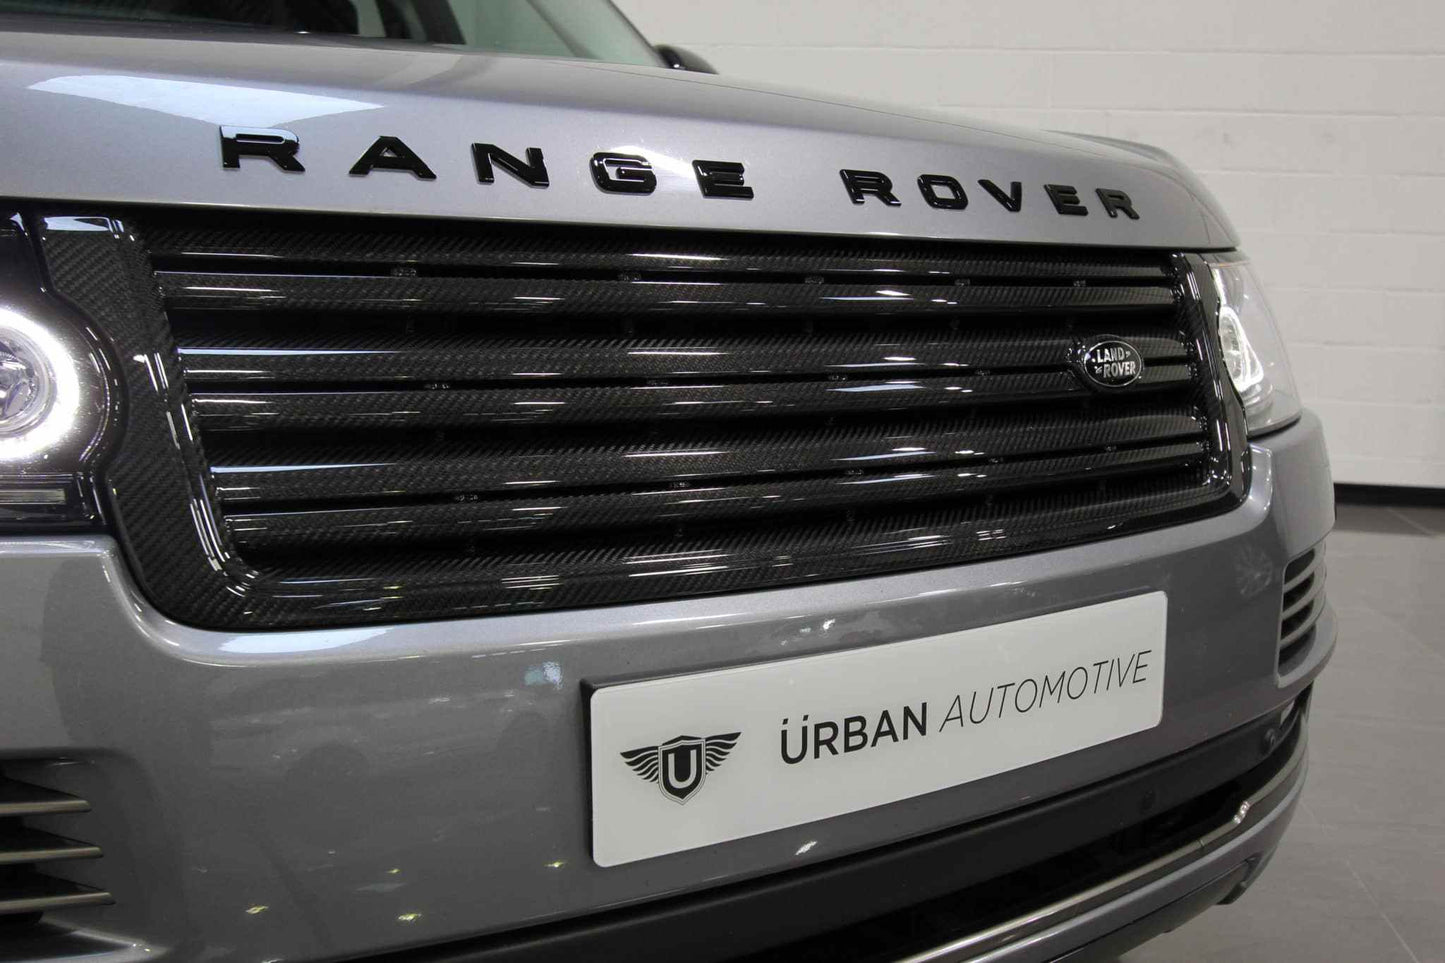 
                  
                    URBAN Automotive Carbon Fibre Autograph Grille for Range Rover Vogue
                  
                